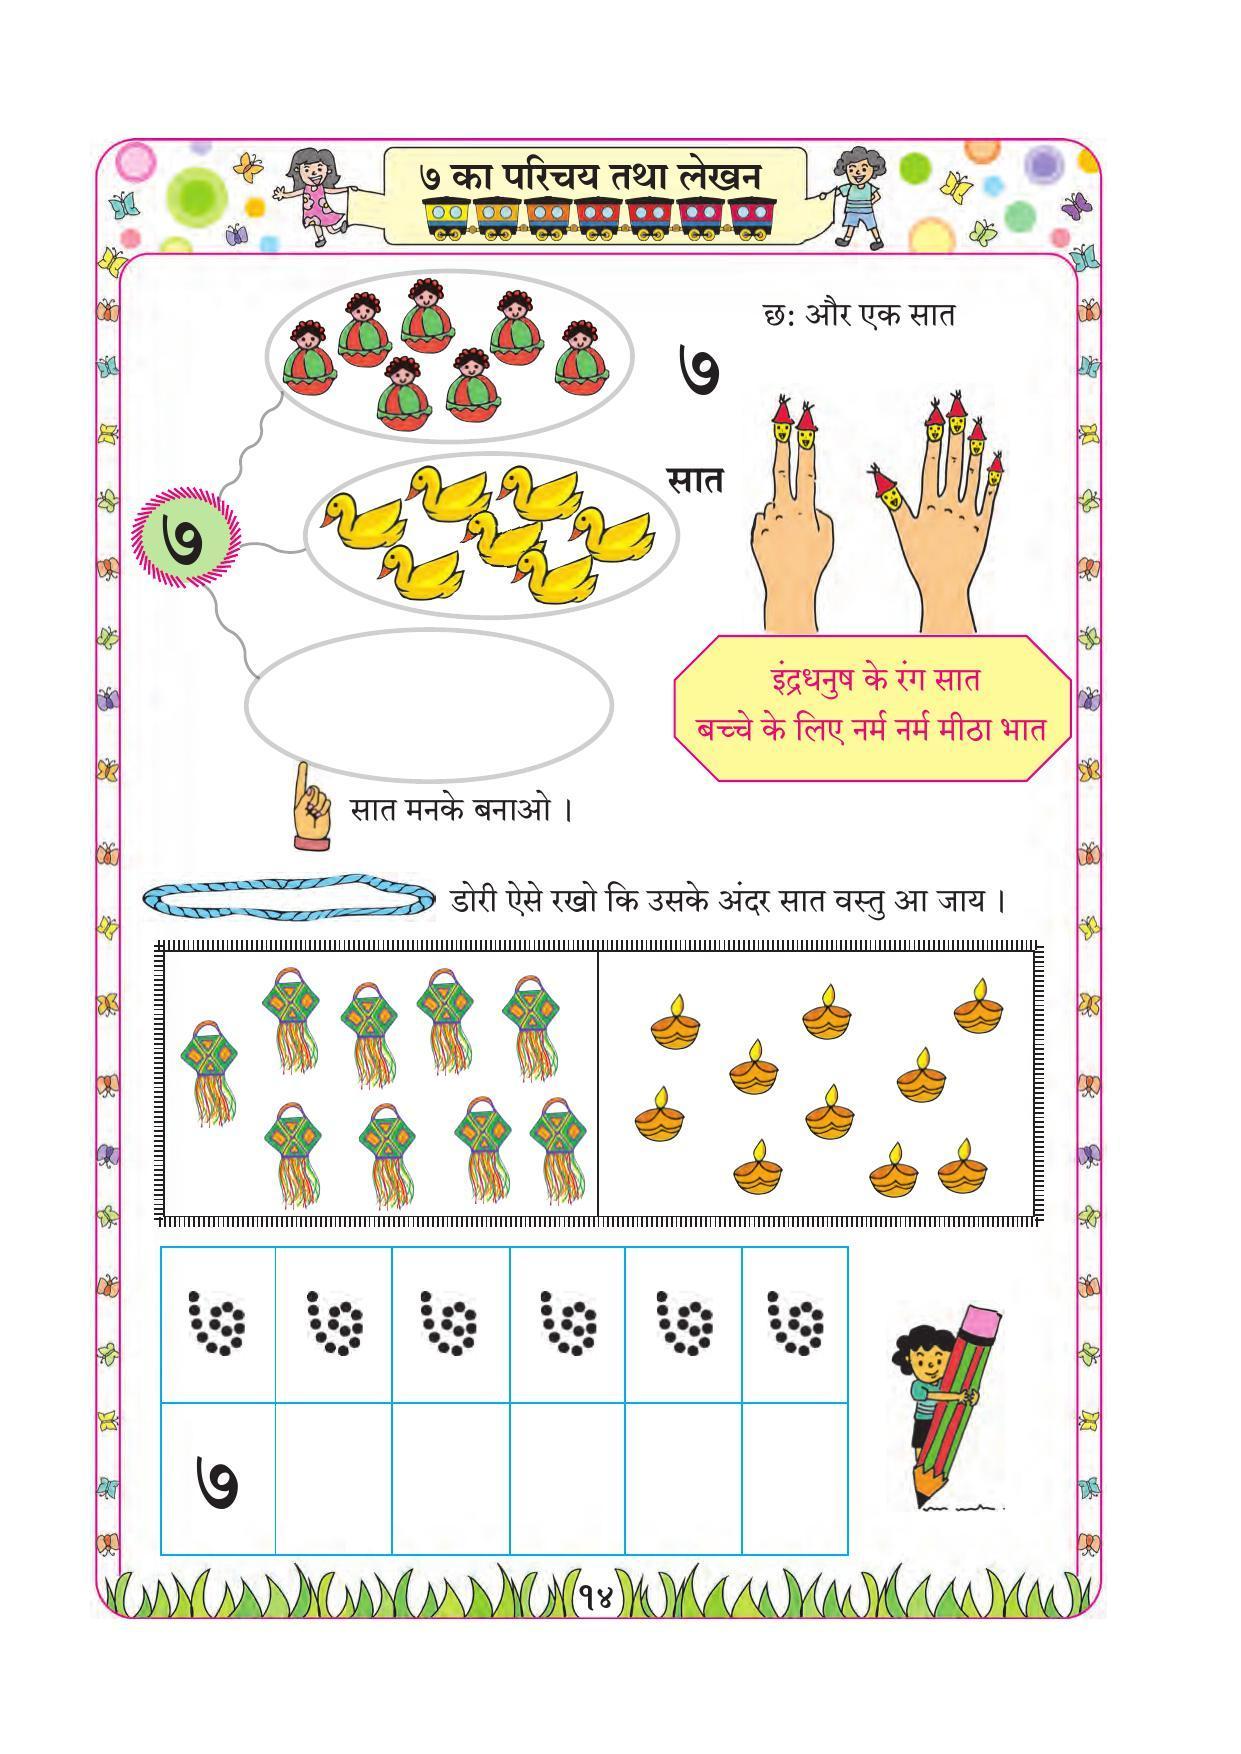 Maharashtra Board Class 1 Maths (Hindi Medium) Textbook - Page 24